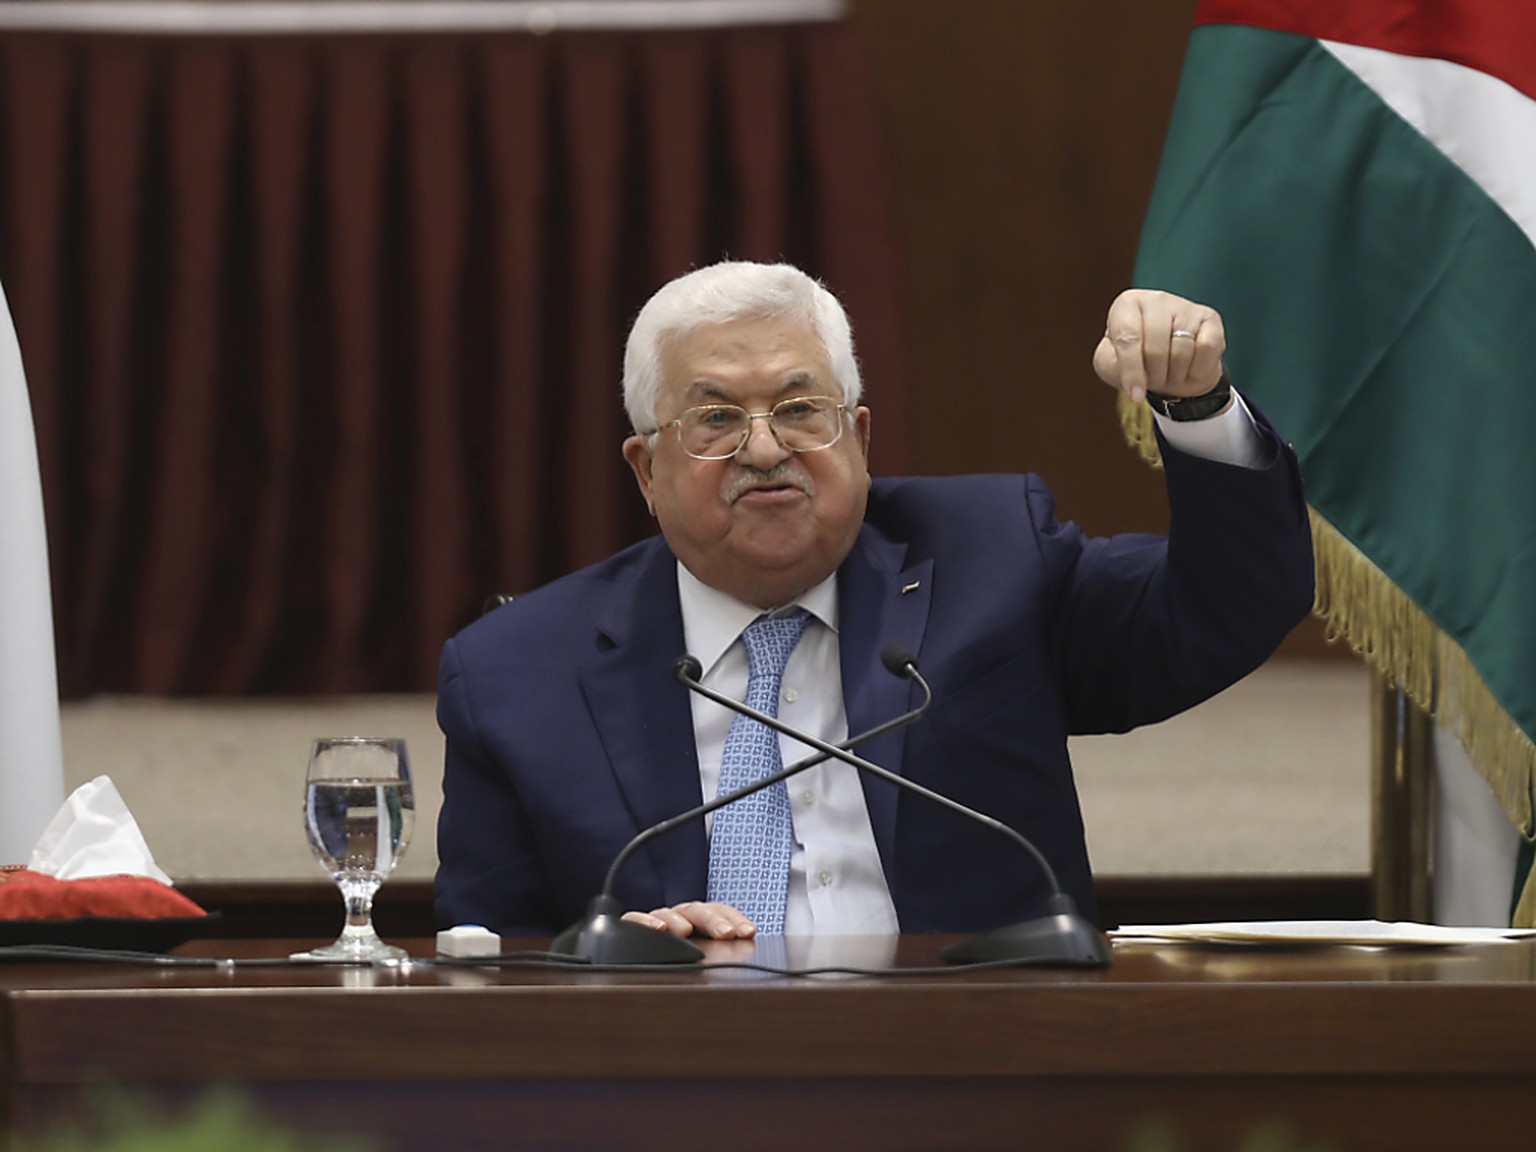 dpatopbilder - Pal�stinenserpr�sident Mahmud Abbas spricht bei einem Treffen der Pal�stinenserf�hrung in seinem Hauptquartier. Foto: Alaa Badarneh/EPA/AP/dpa